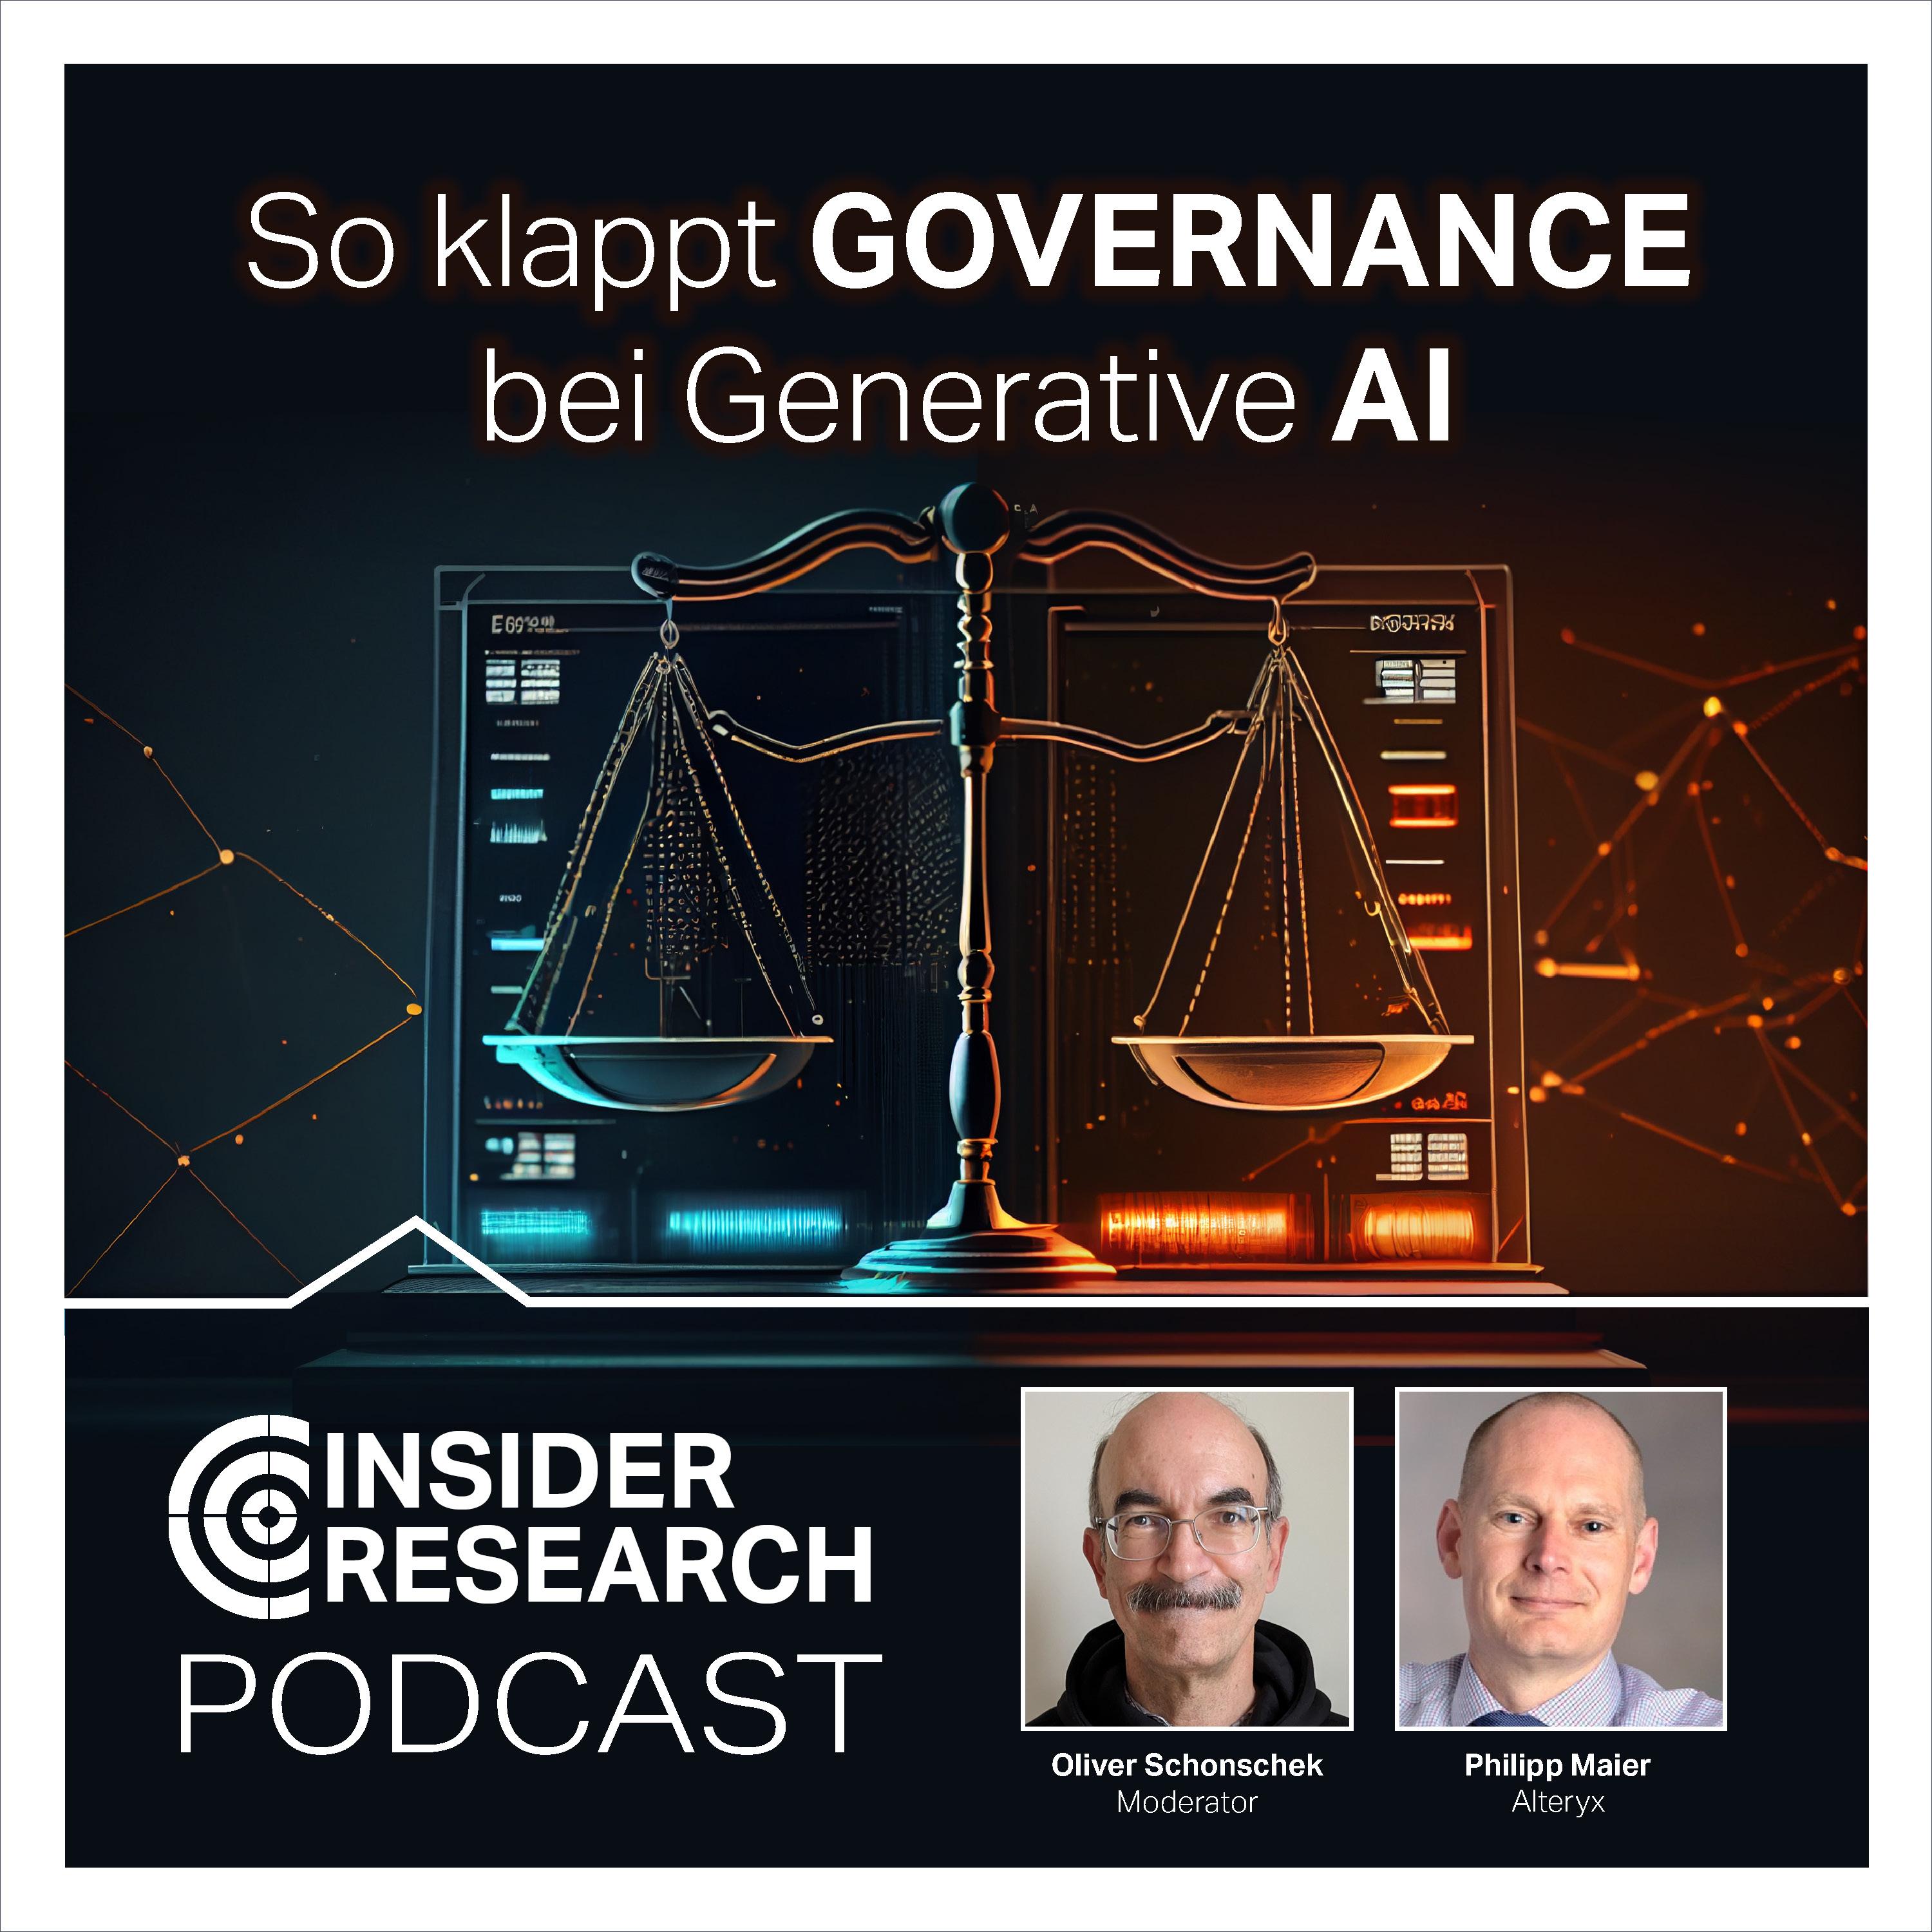 So klappt Governance bei Generative AI, mit Philipp Maier von Alteryx